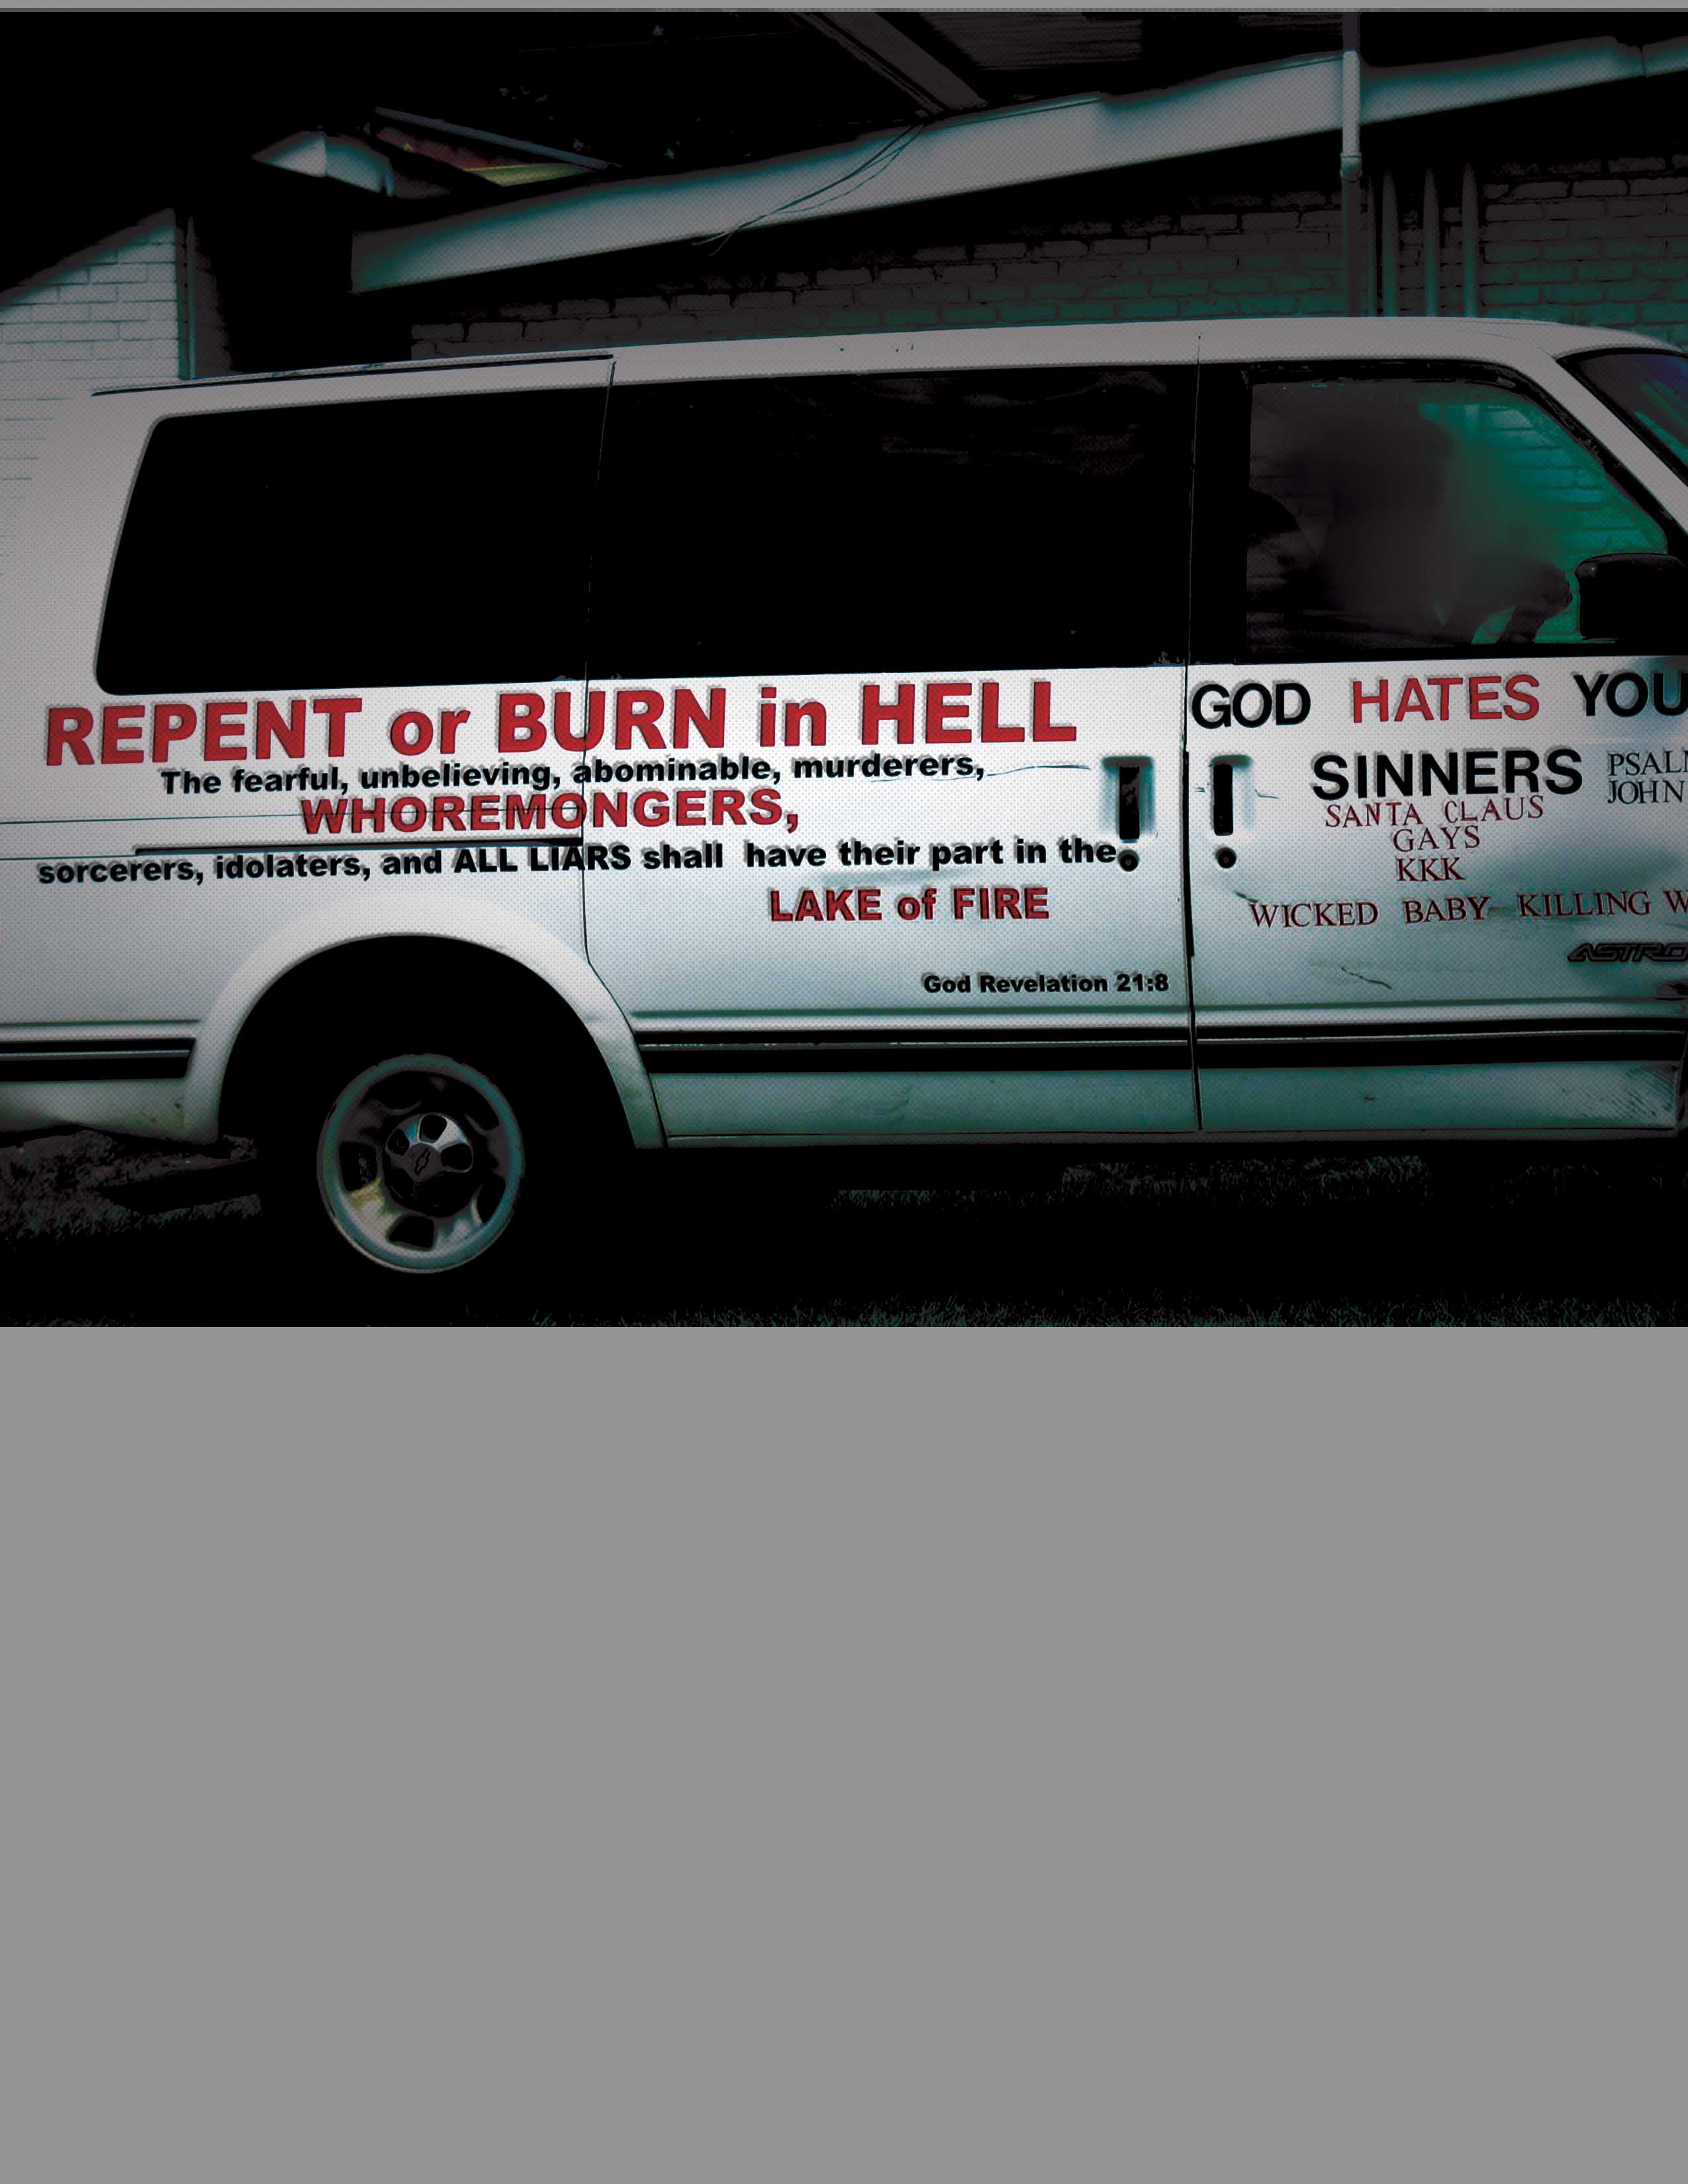 Repent or Burn